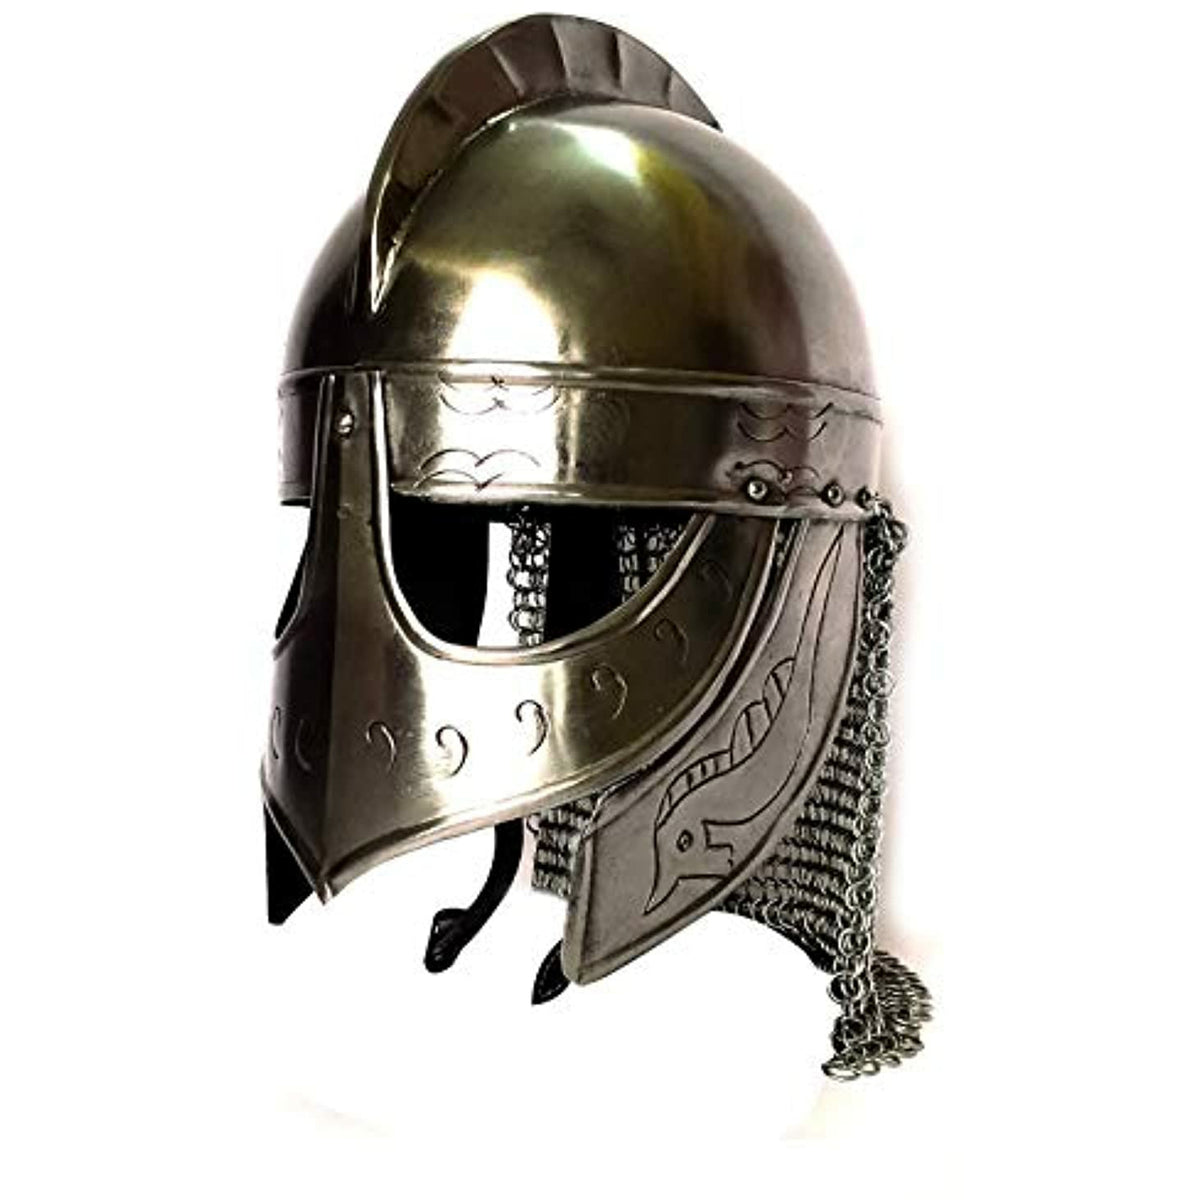 Valsgarde Helm in Stainless Steel - Viking Helmet Armor